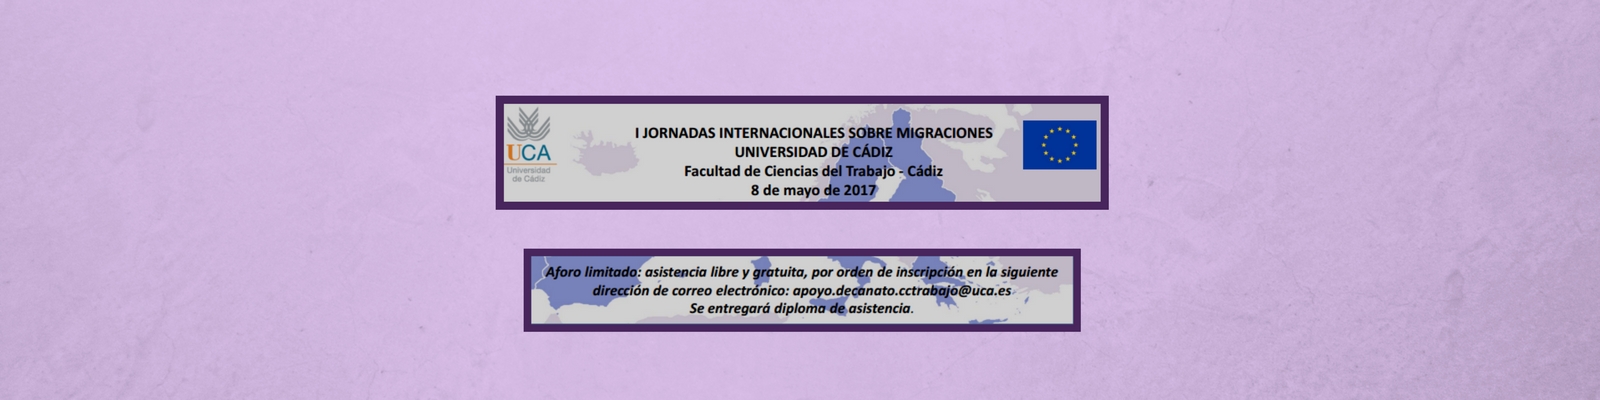 I Jornadas Internacionales sobre Migraciones